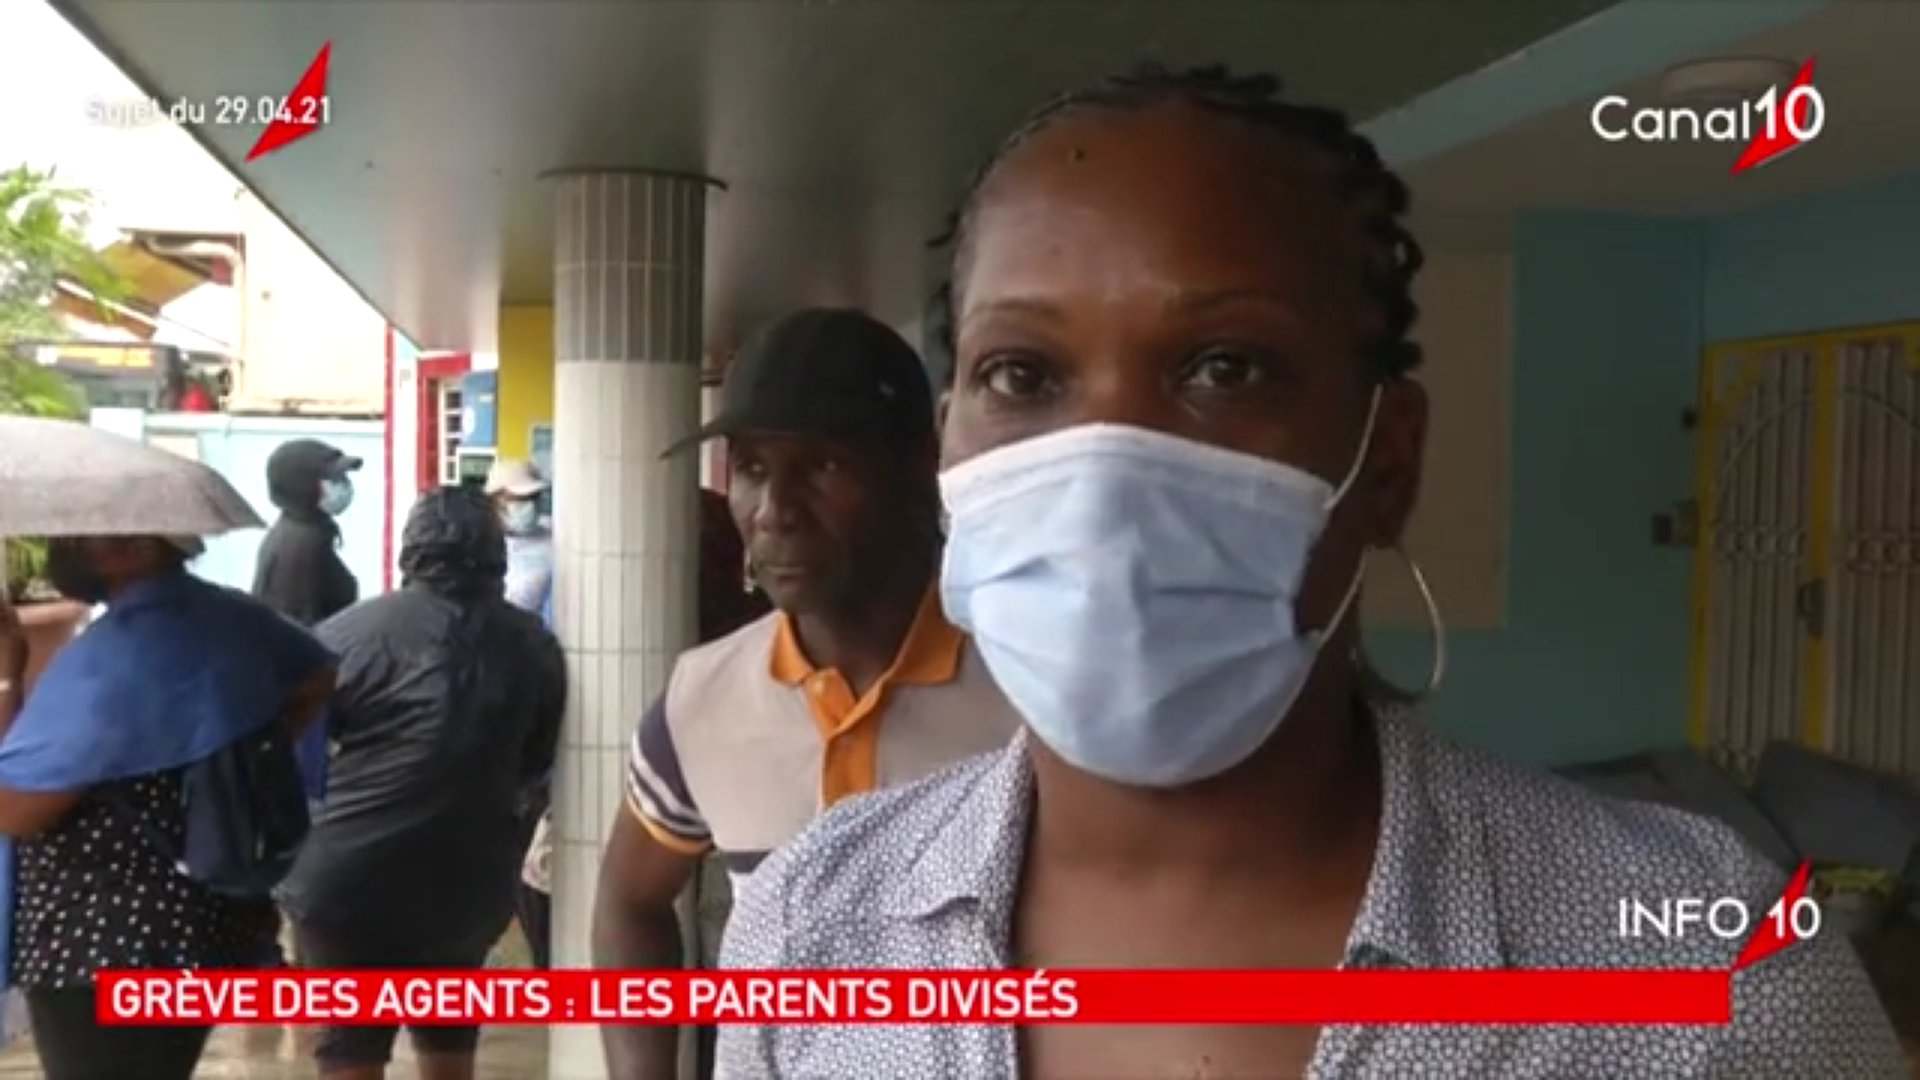 [Vidéo]Onews Guadeloupe. le Jt de Canal 10